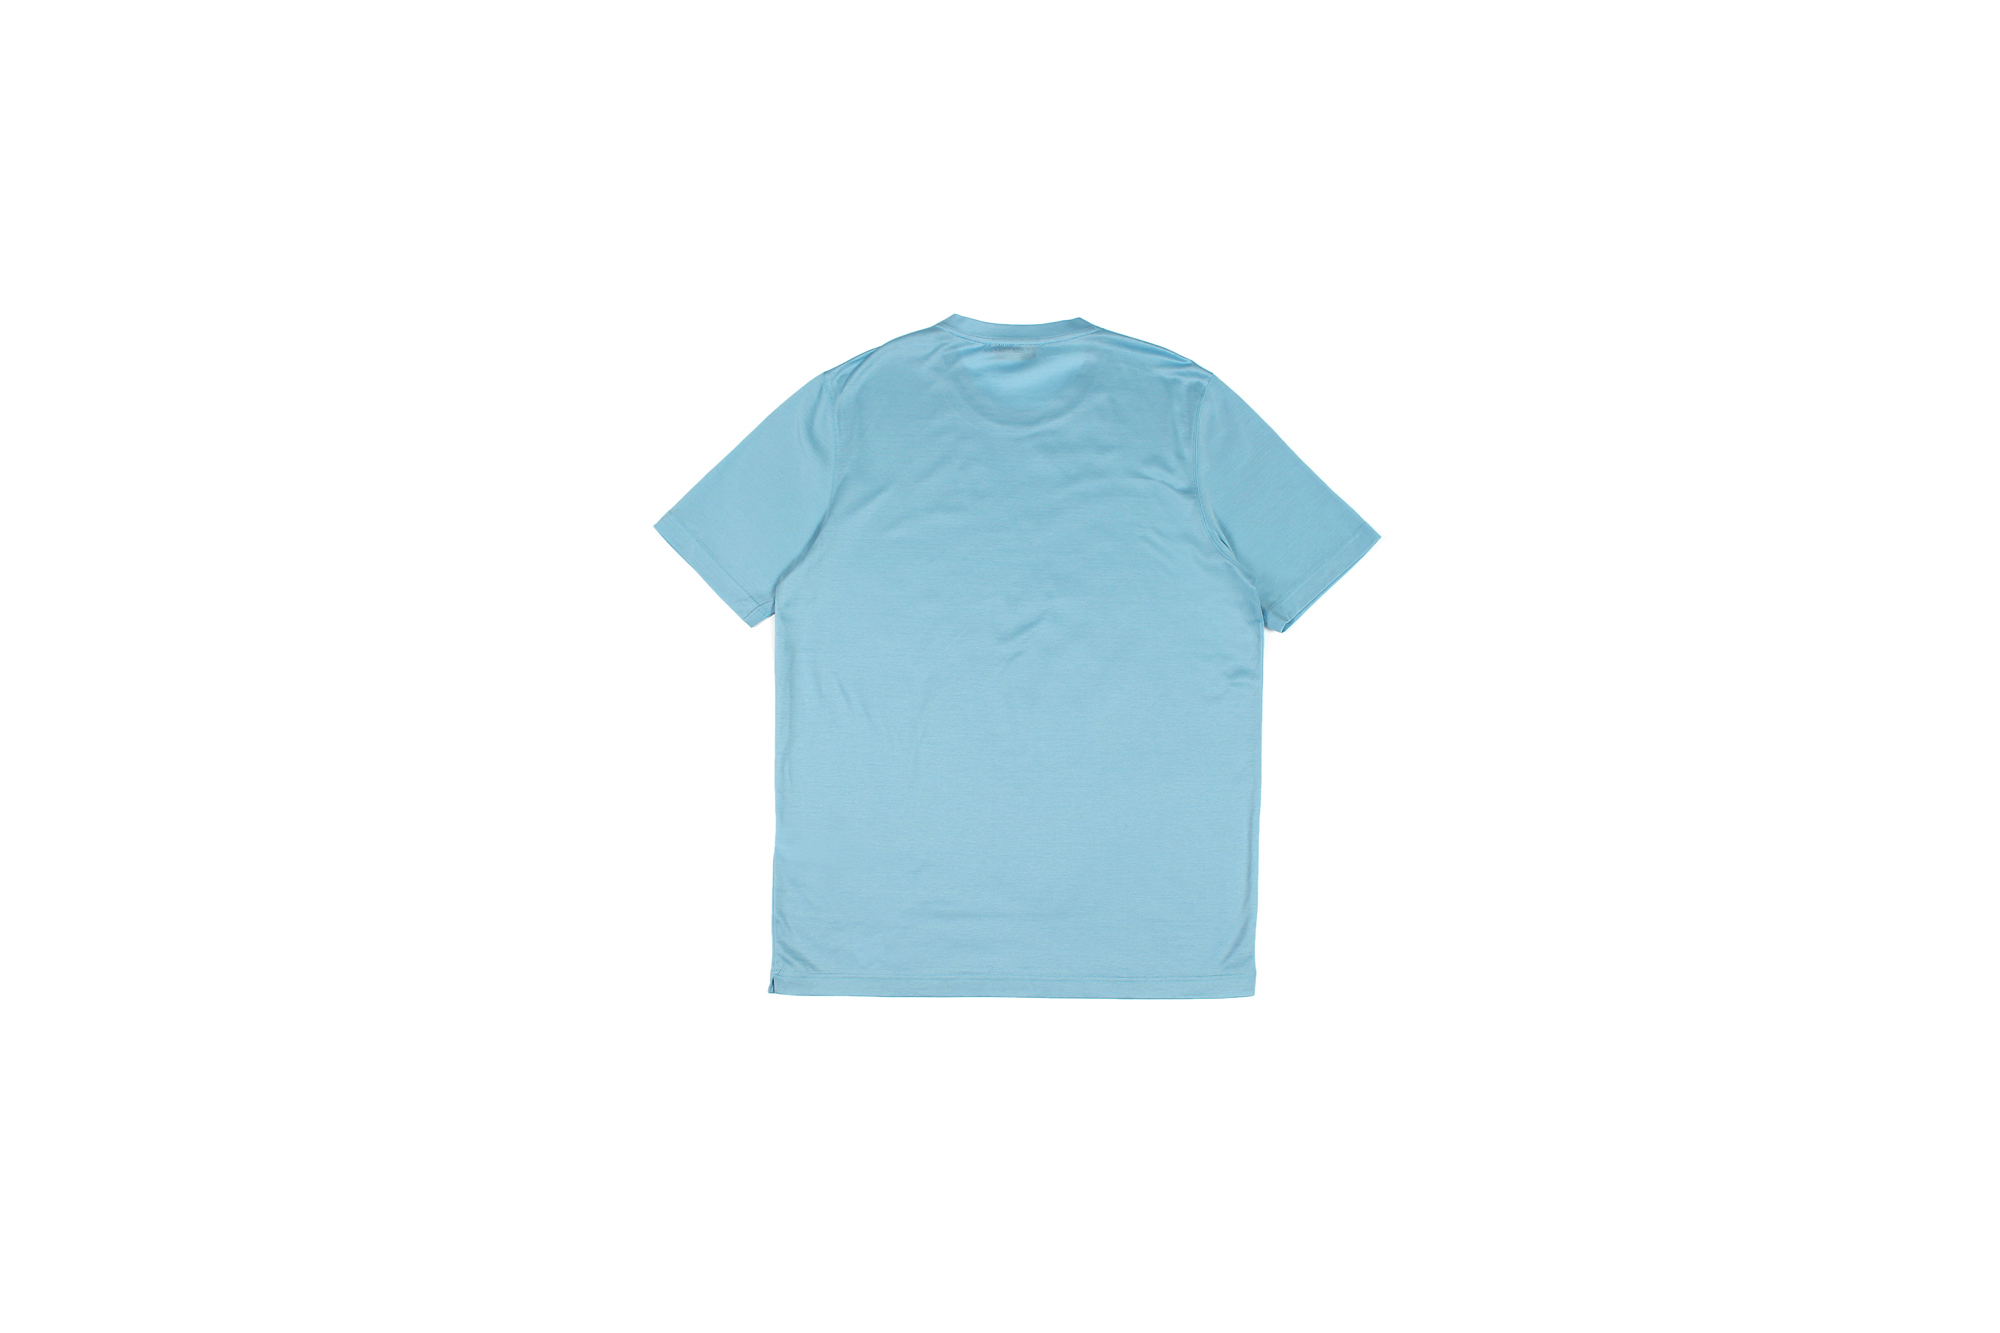 Gran Sasso (グランサッソ) Crew Neck T-shirt (クルーネック Tシャツ) Mercerised Cotton マーセライズドコットン Tシャツ SAX (サックス・541) made in italy (イタリア製) 2022秋冬新作 【入荷しました】【フリー分発売開始】愛知 名古屋 Alto e Diritto altoediritto アルトエデリット